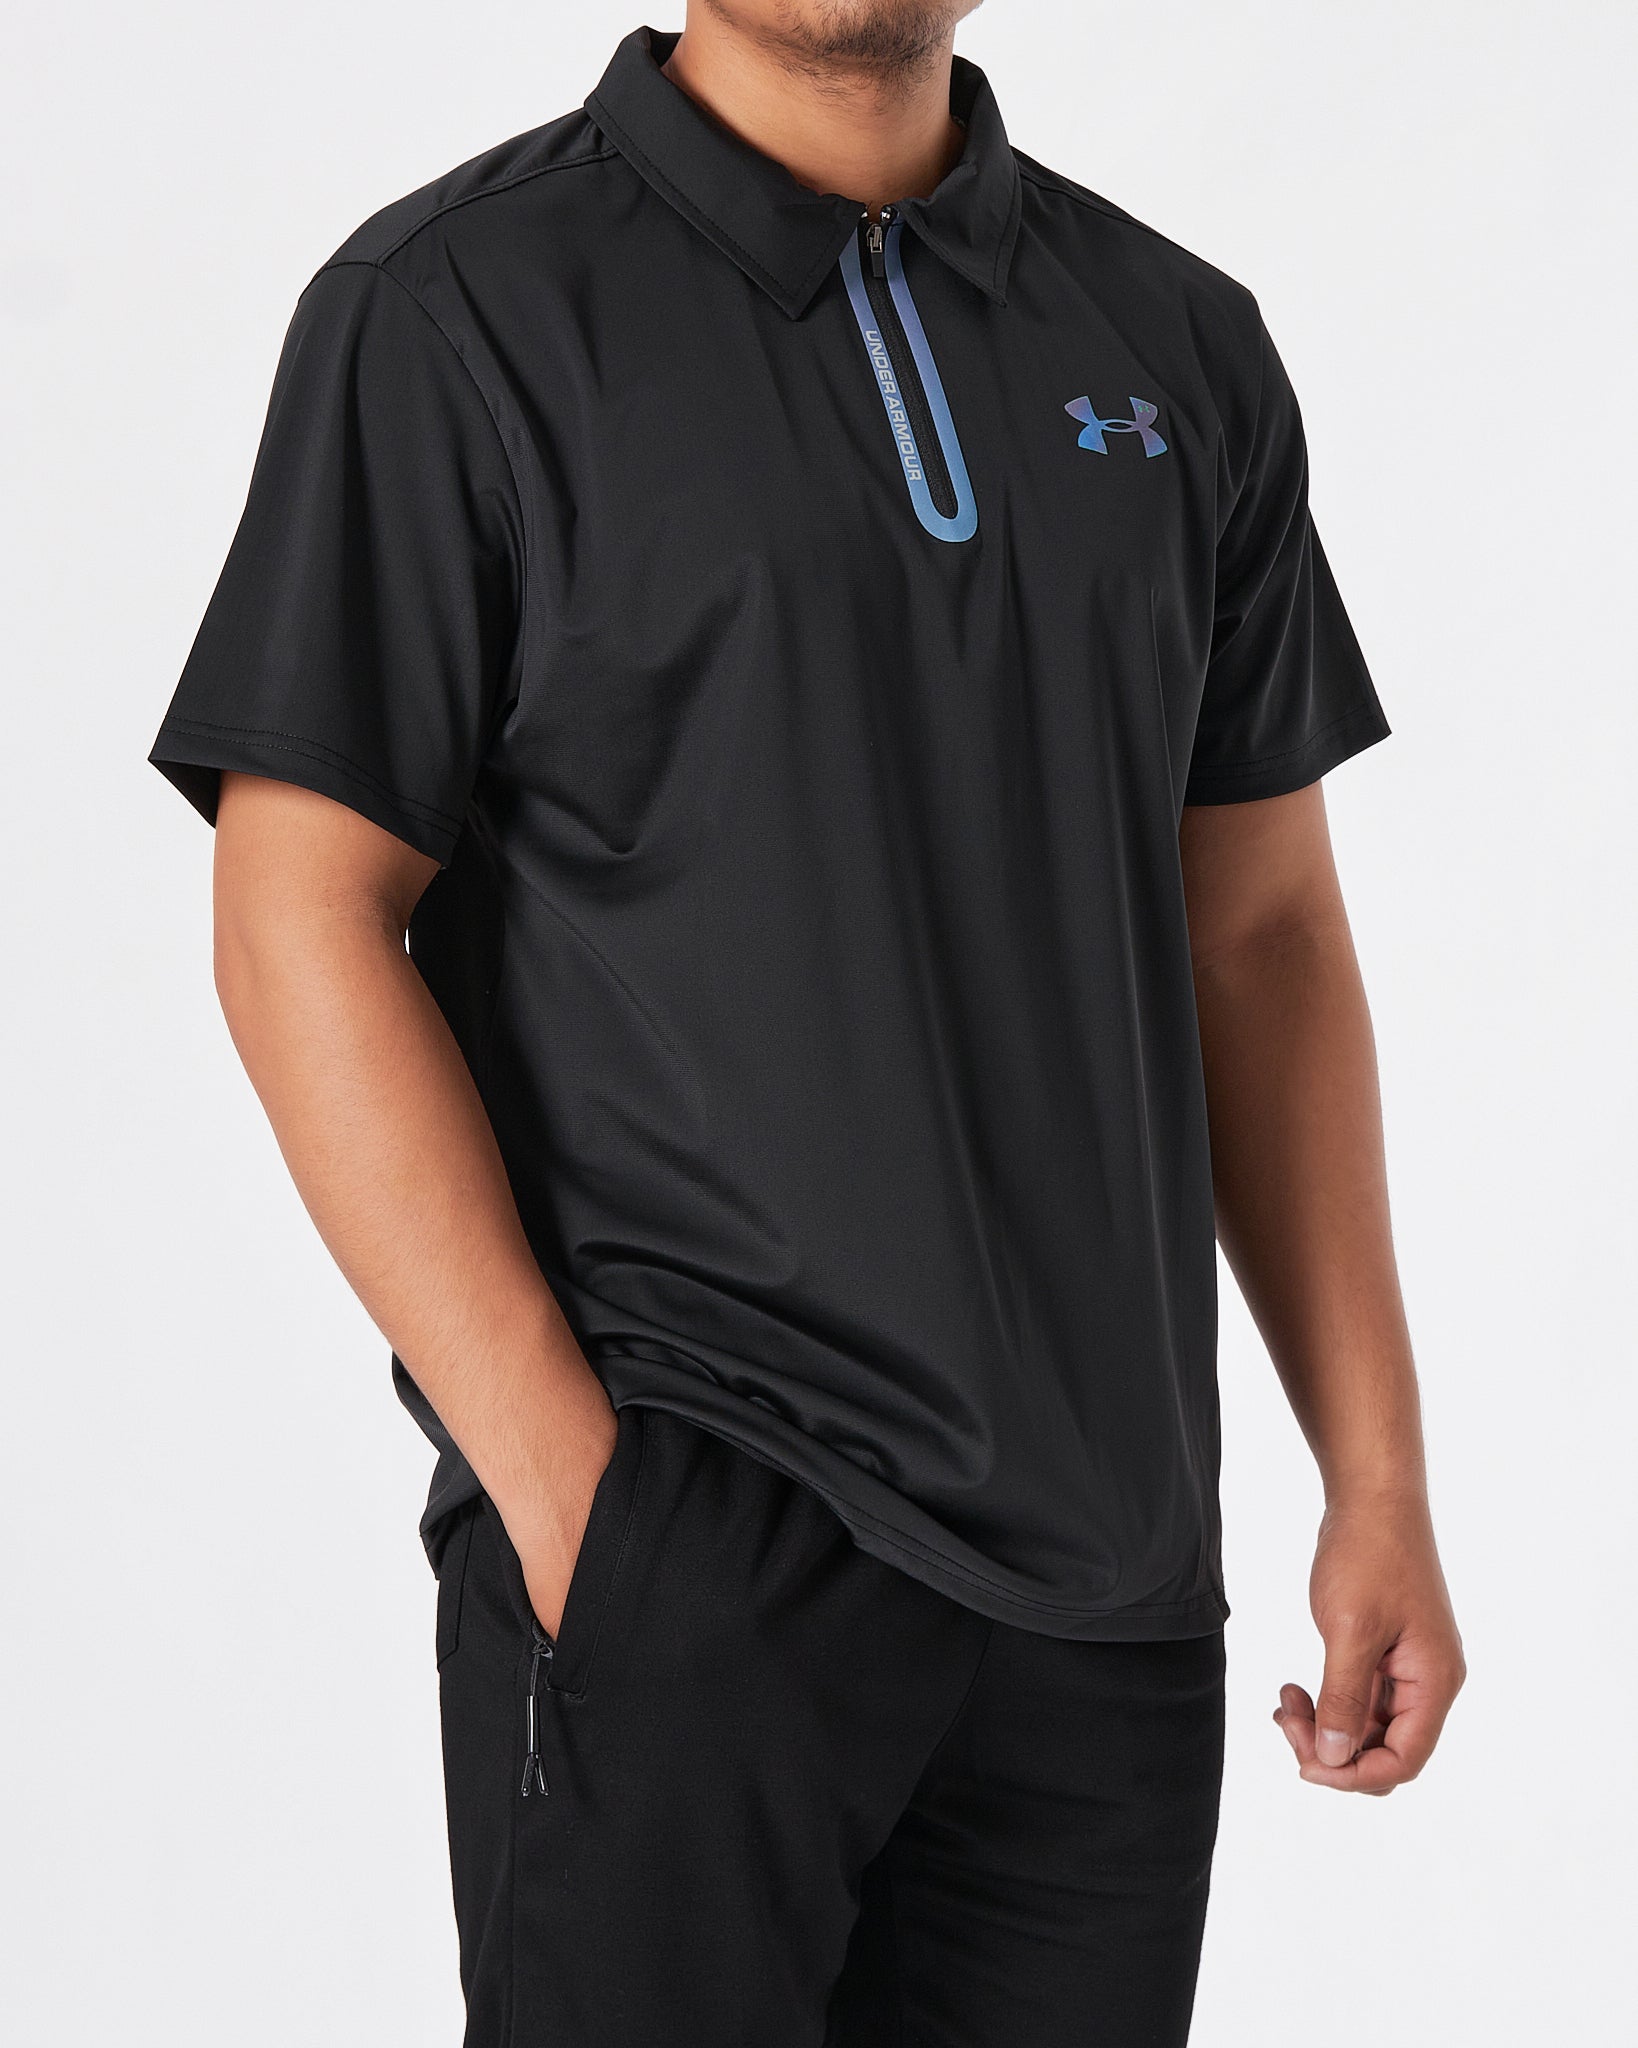 UA Lightweight Logo Printed Men Black Polo Shirt 15.50